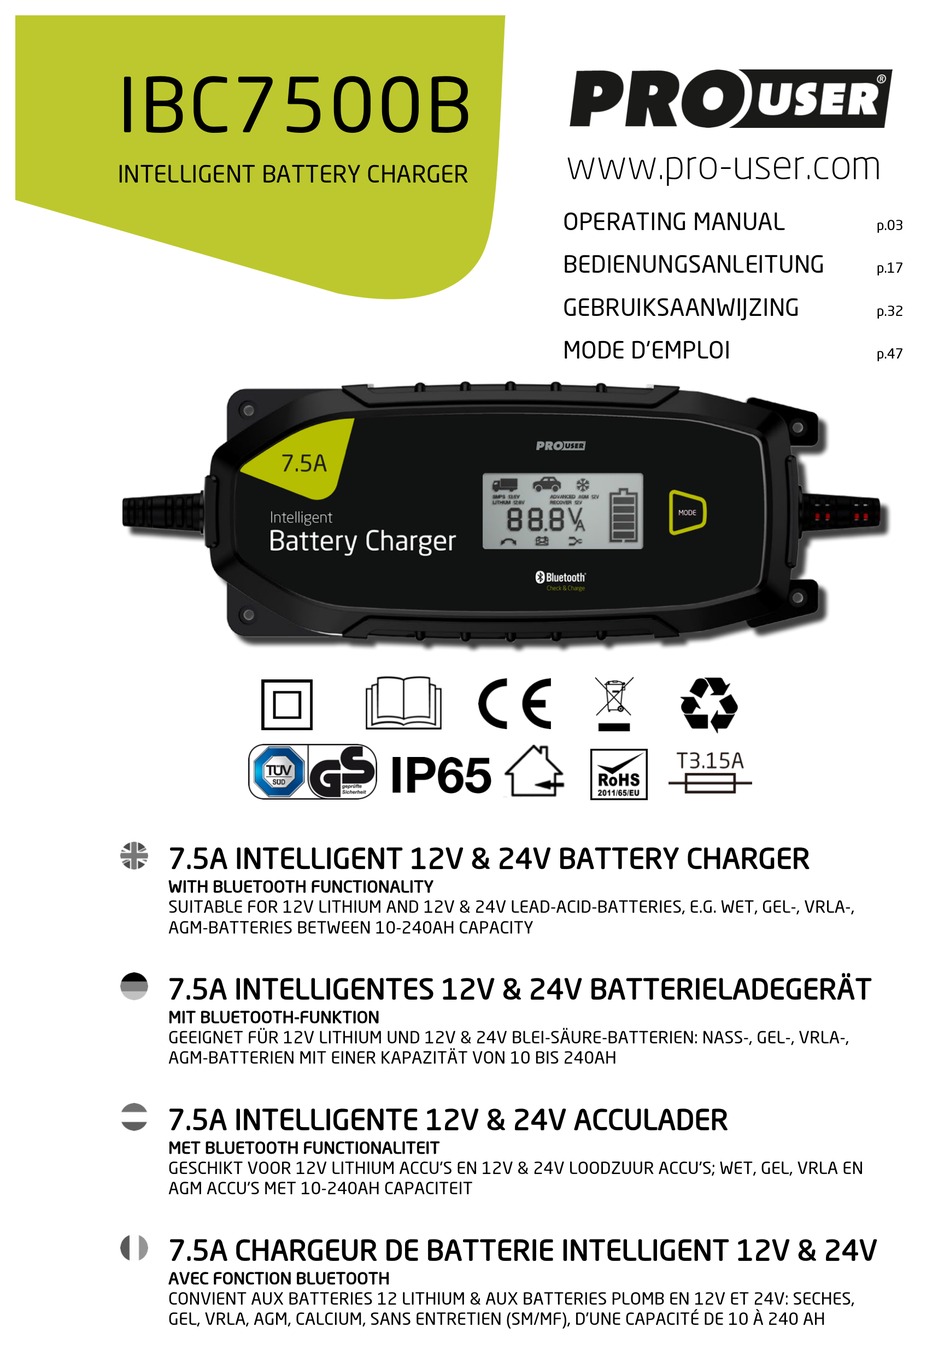 ProUser IBC7500B 12V 24V intelligentes Batterieladegerät 10-240Ah Bluetooth App 